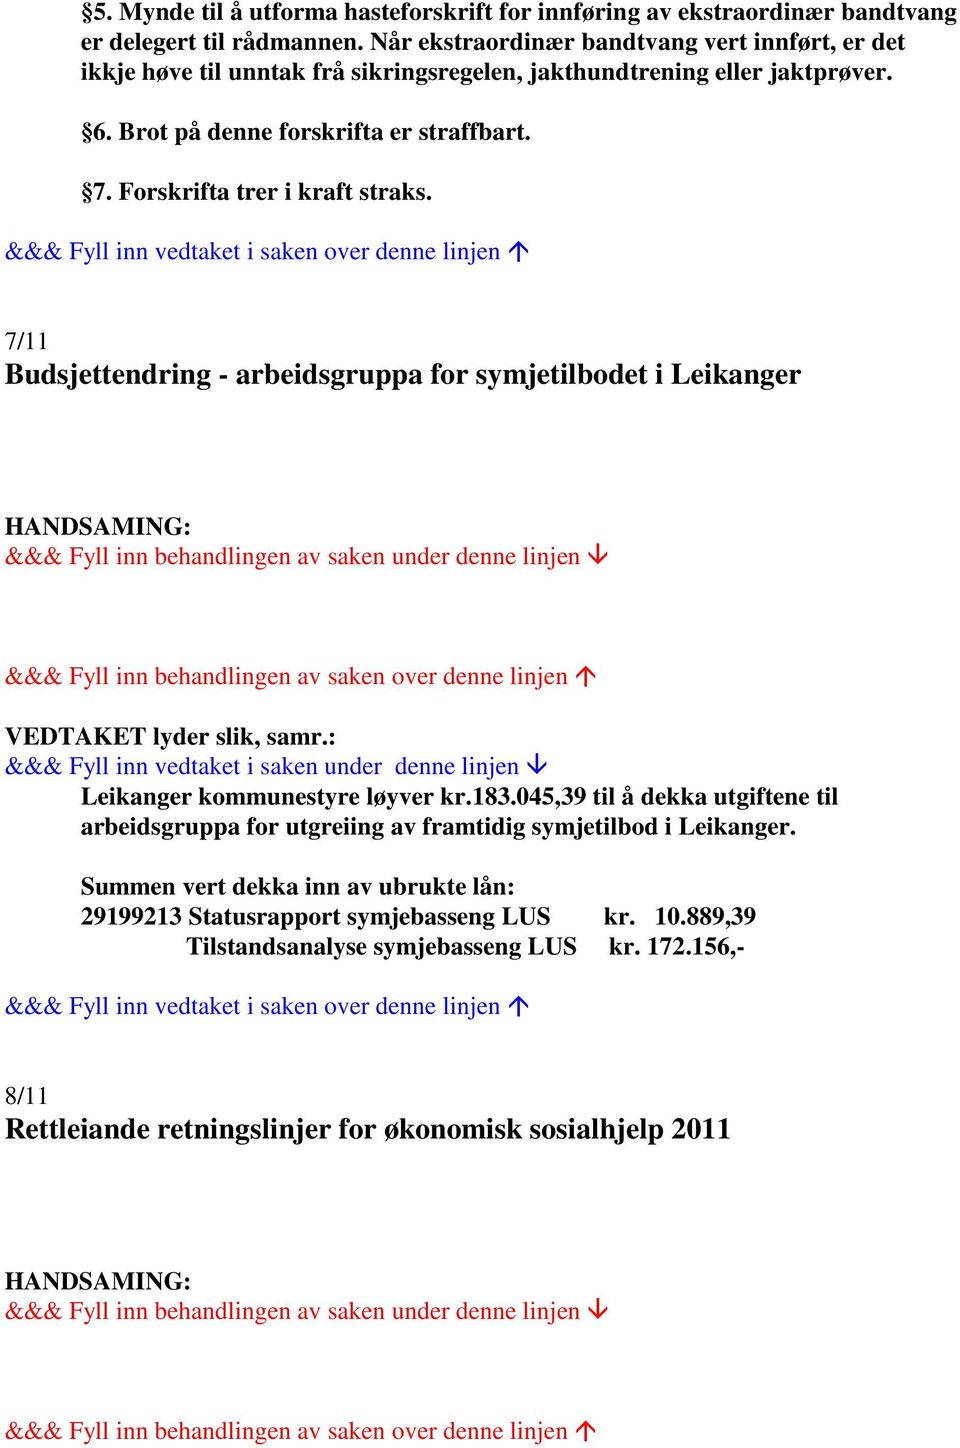 Forskrifta trer i kraft straks. 7/11 Budsjettendring - arbeidsgruppa for symjetilbodet i Leikanger Leikanger kommunestyre løyver kr.183.